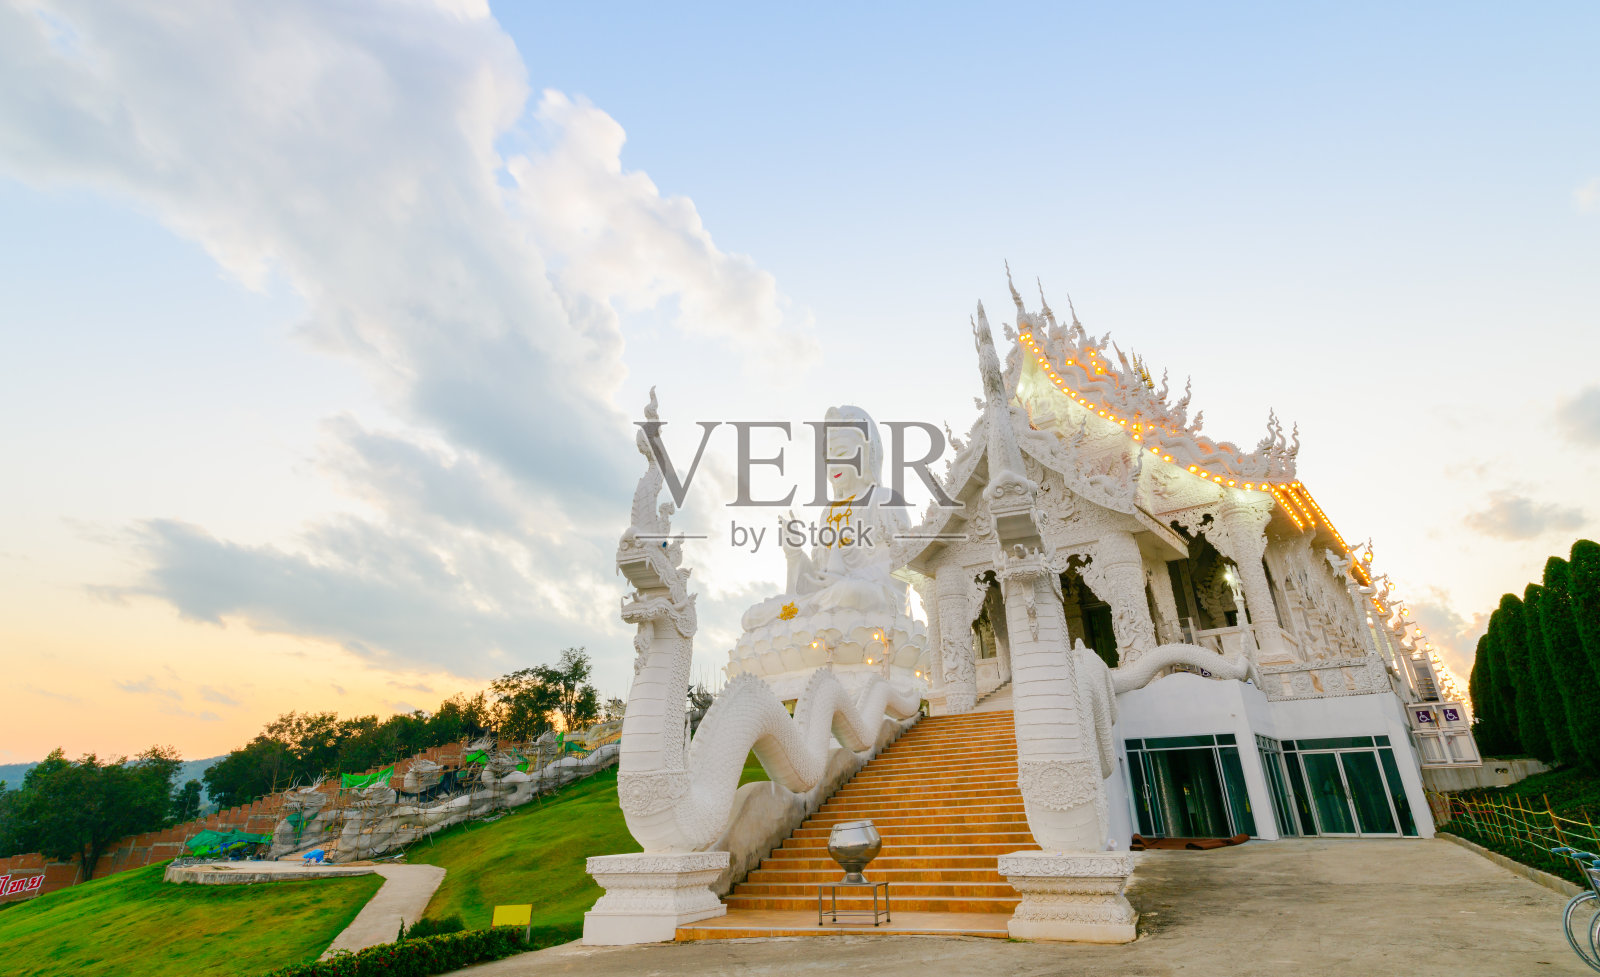 淮pla康寺的双龙和观音雕像照片摄影图片